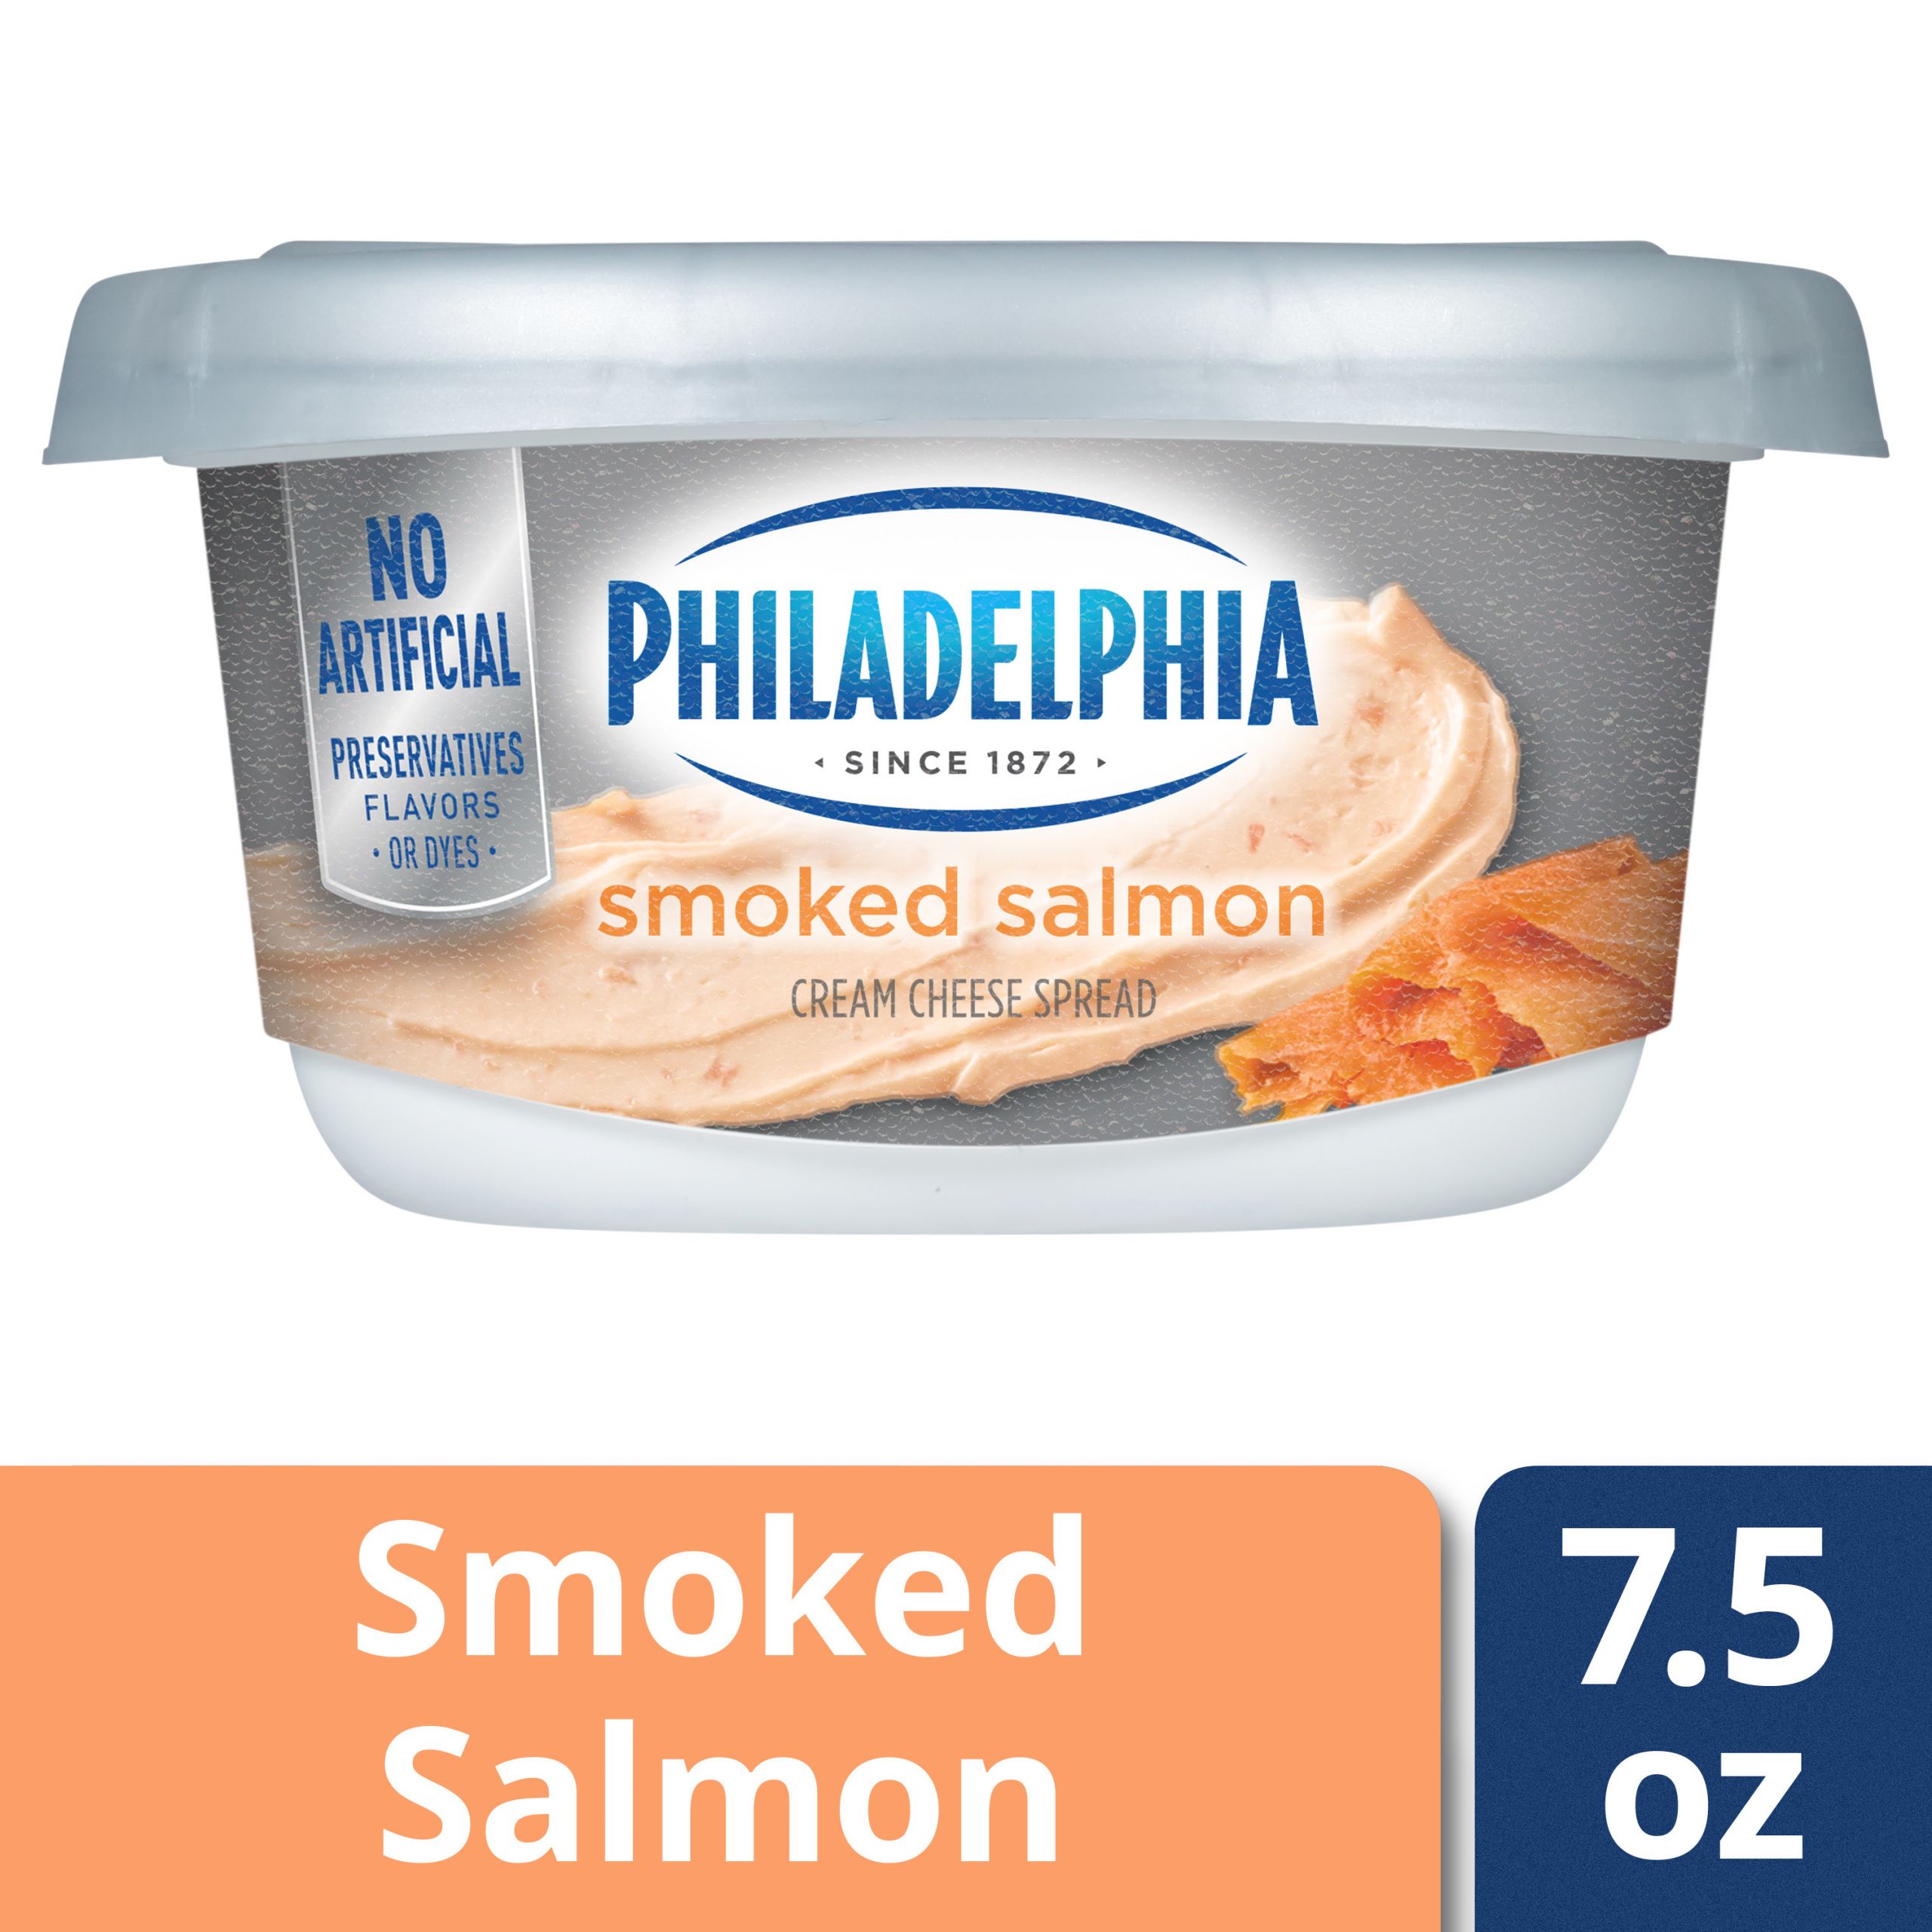 Smoked Salmon Walmart
 Philadelphia Smoked Salmon Cream Cheese Spread 7 5 oz Tub